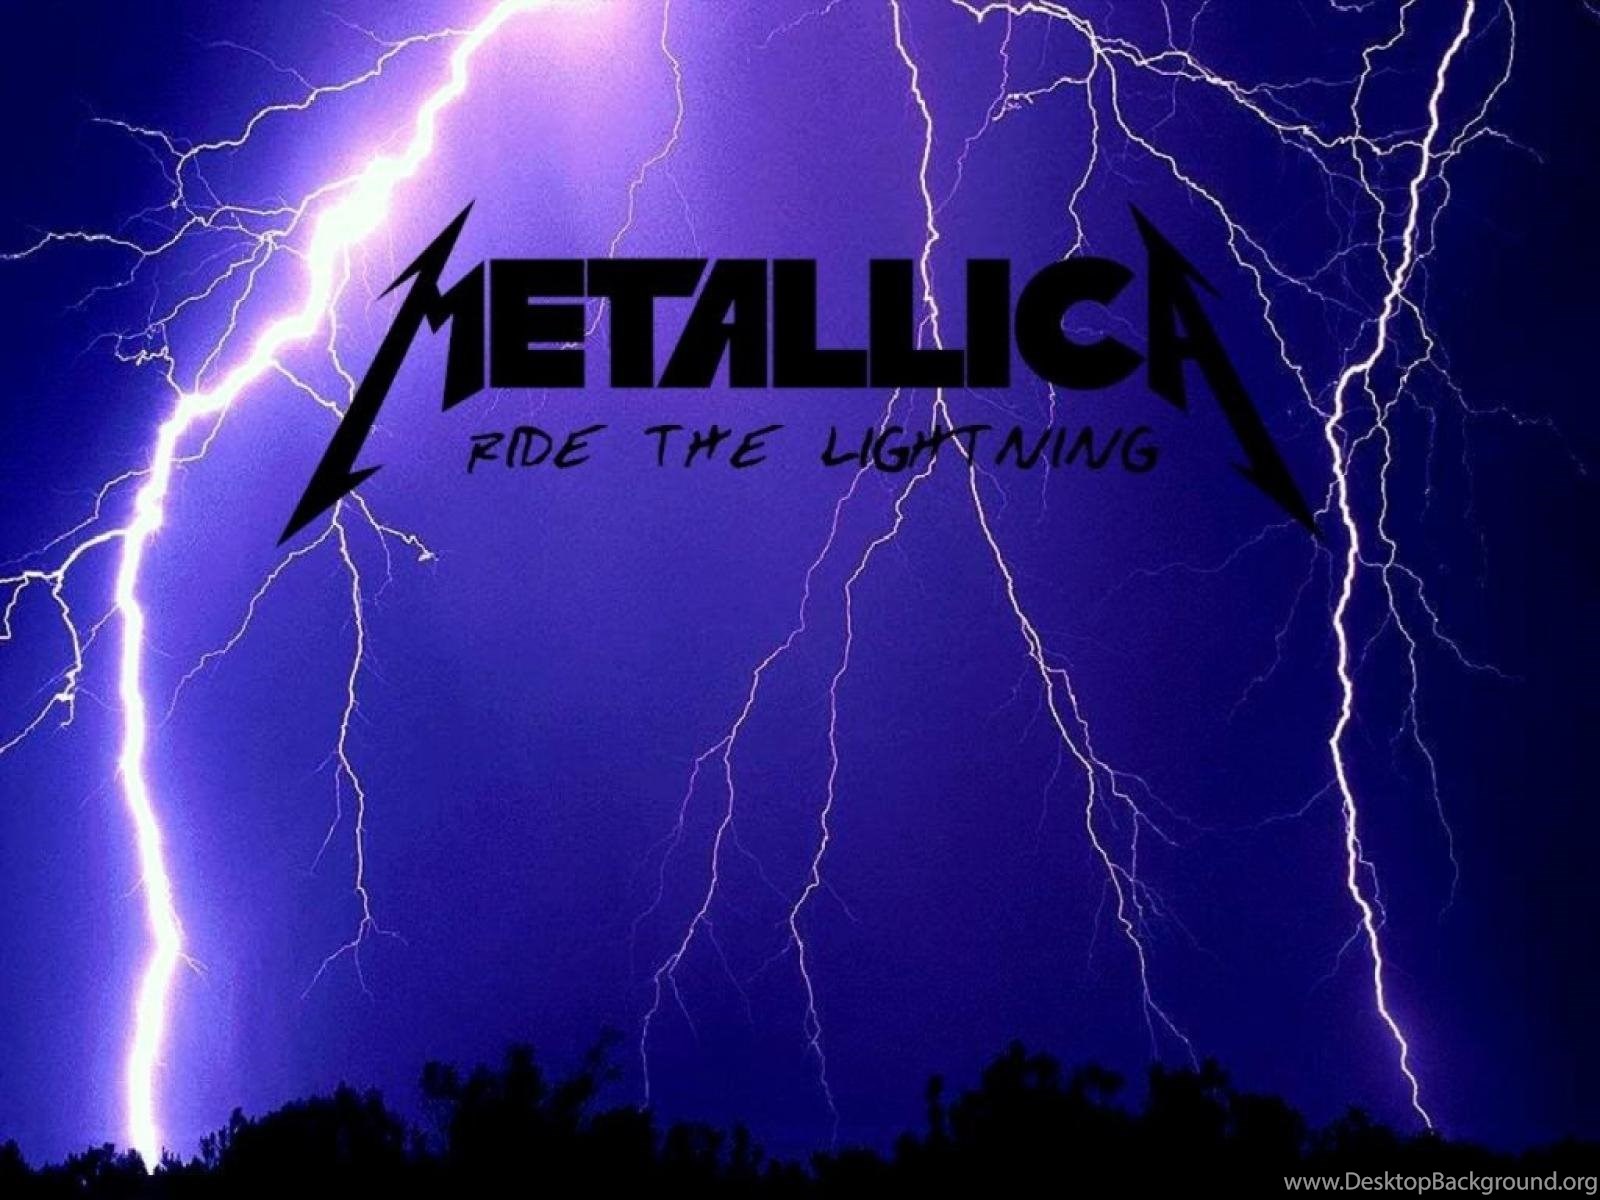 Молния обложка. Metallica Ride the Lightning обложка. Metallica обои. Металлика альбом с молнией. Металлика логотип.